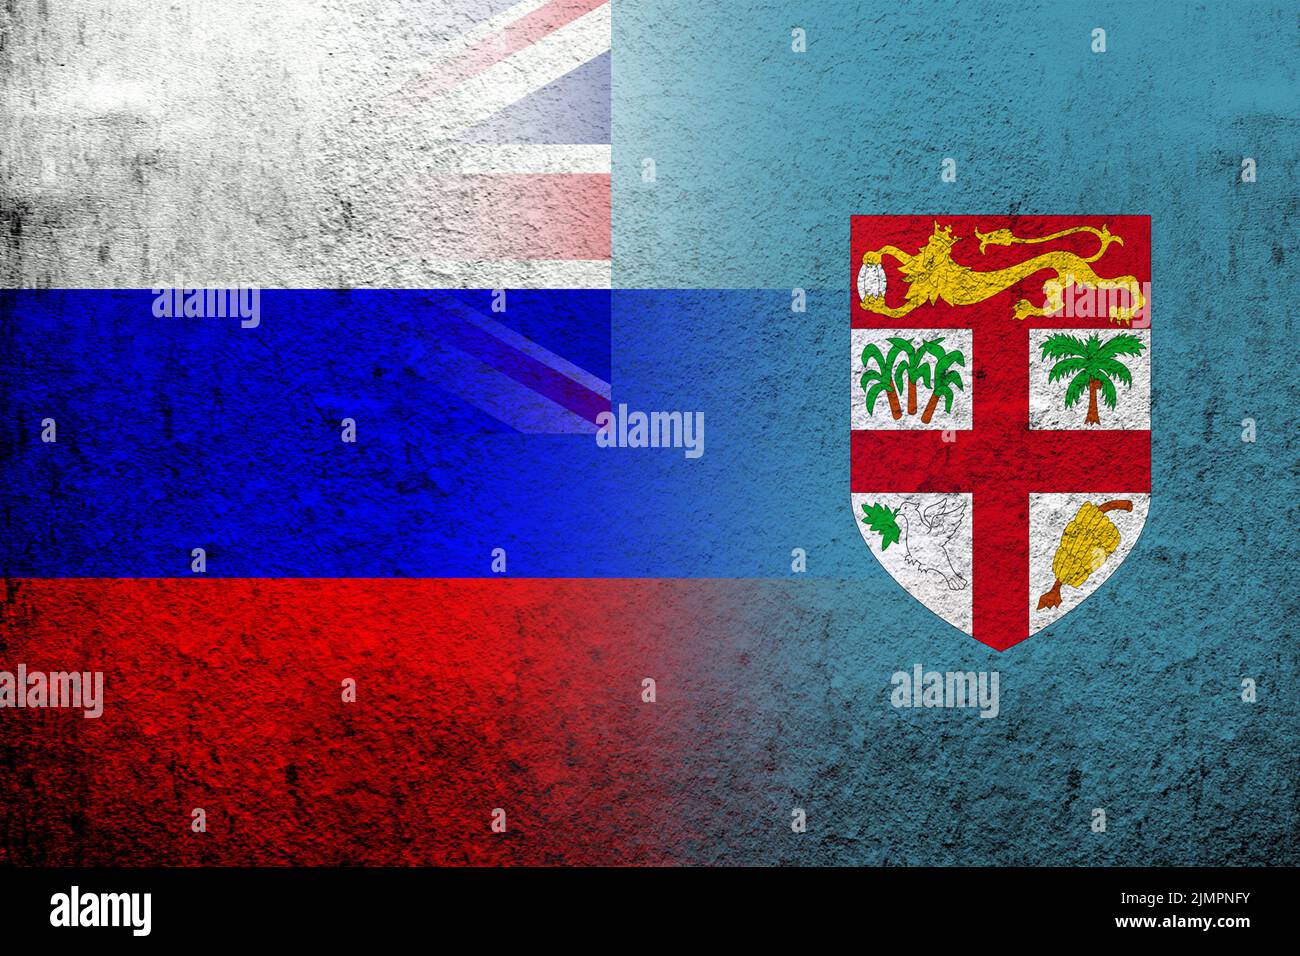 Drapeau national de la Fédération de Russie avec la République de Fidji drapeau national. Grunge l'arrière-plan Banque D'Images